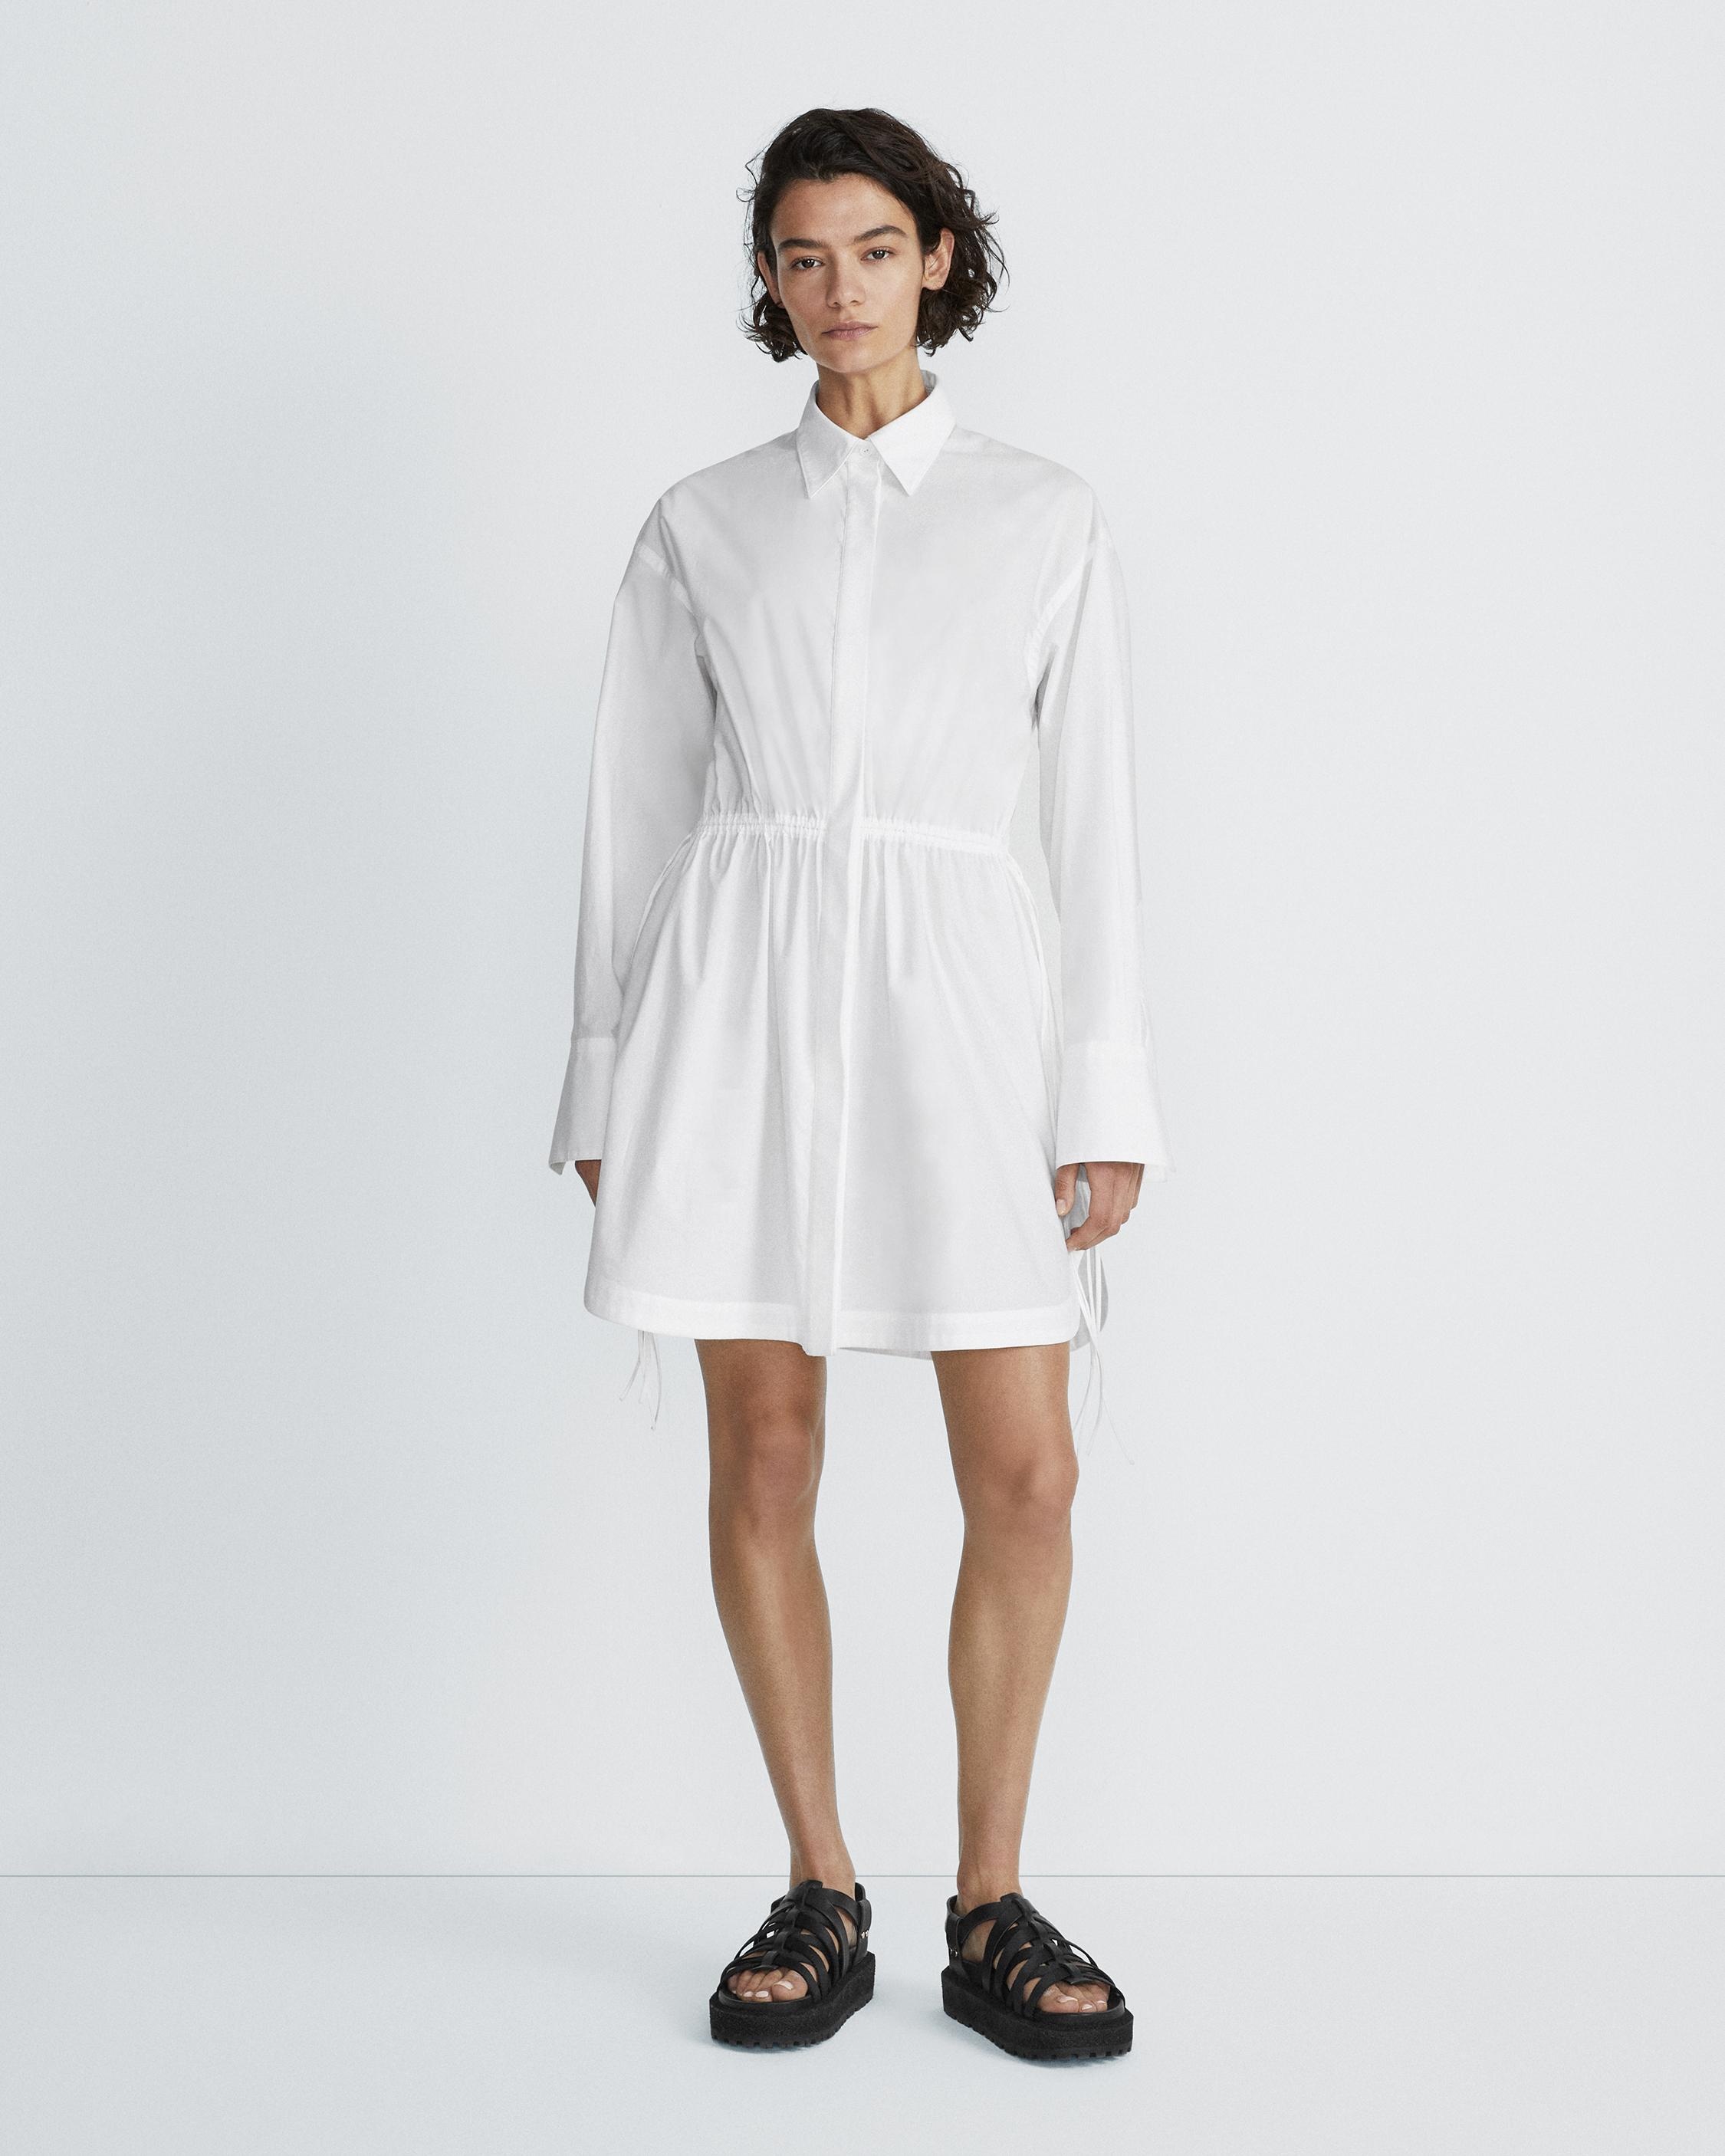 Fiona Mini Shirt Dress
Cotton Poplin Dress - 2